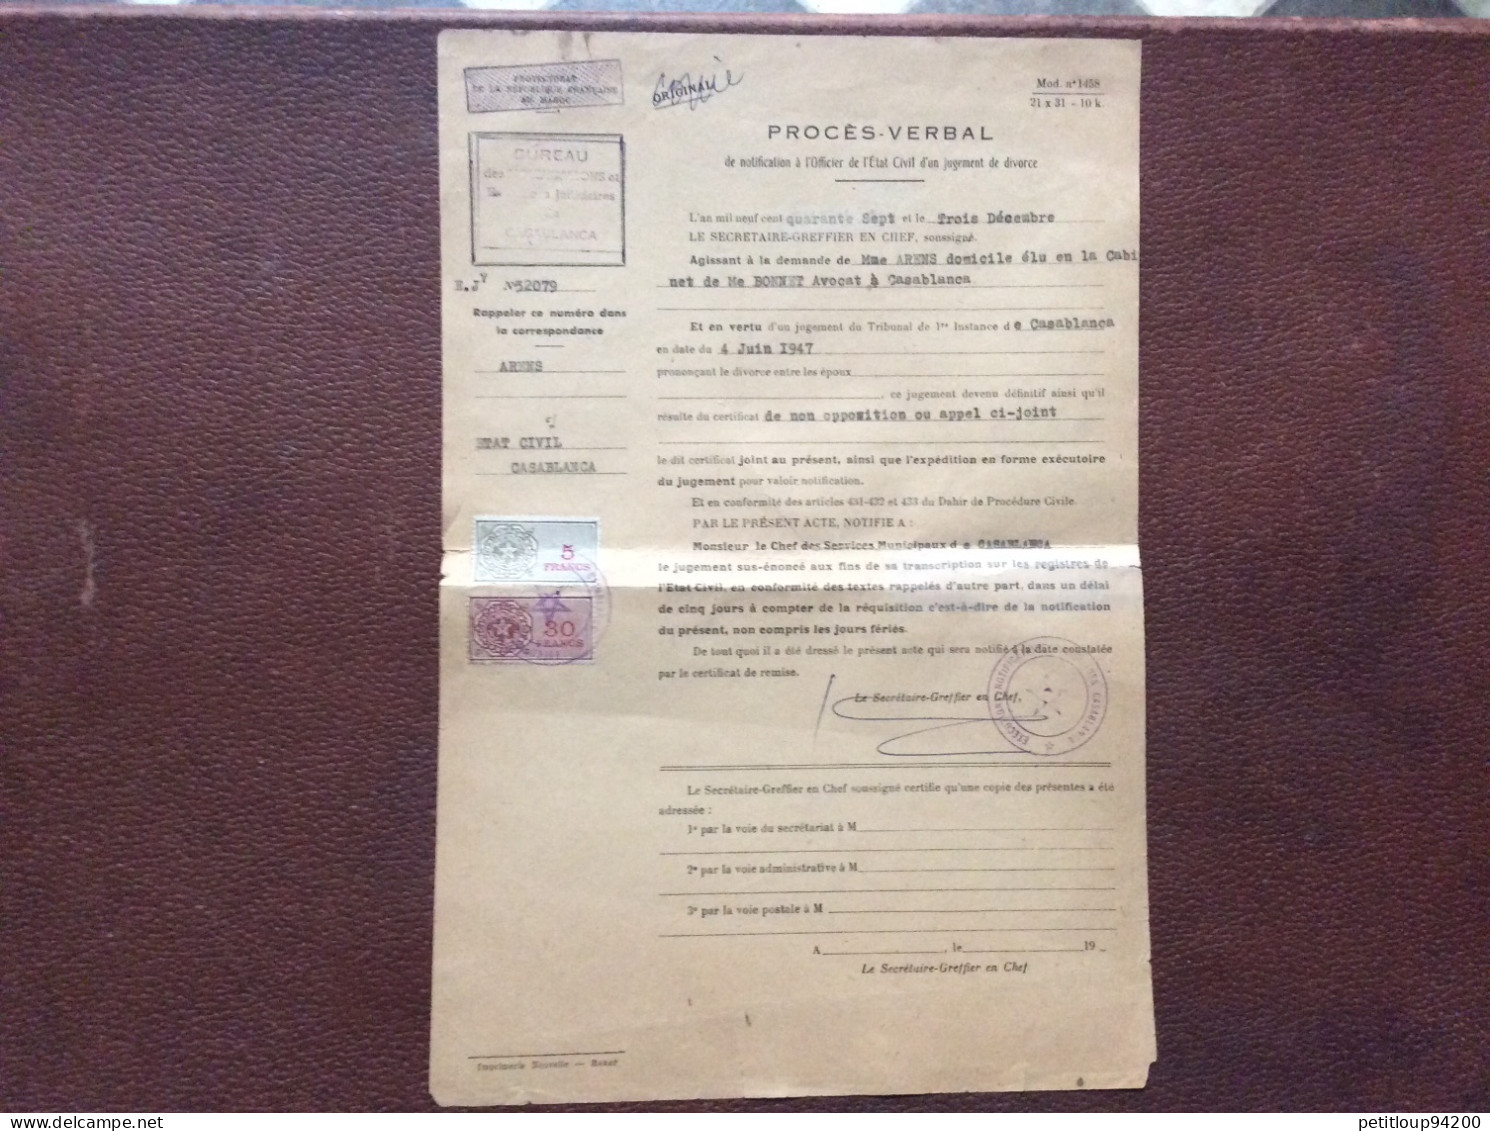 2 TIMBRES FISCAUX SUR DOCUMENT  Procès Verbal  *5 Francs & 30 Francs  CASABLANCA  Maroc  ANNÉE 1947 - Portomarken